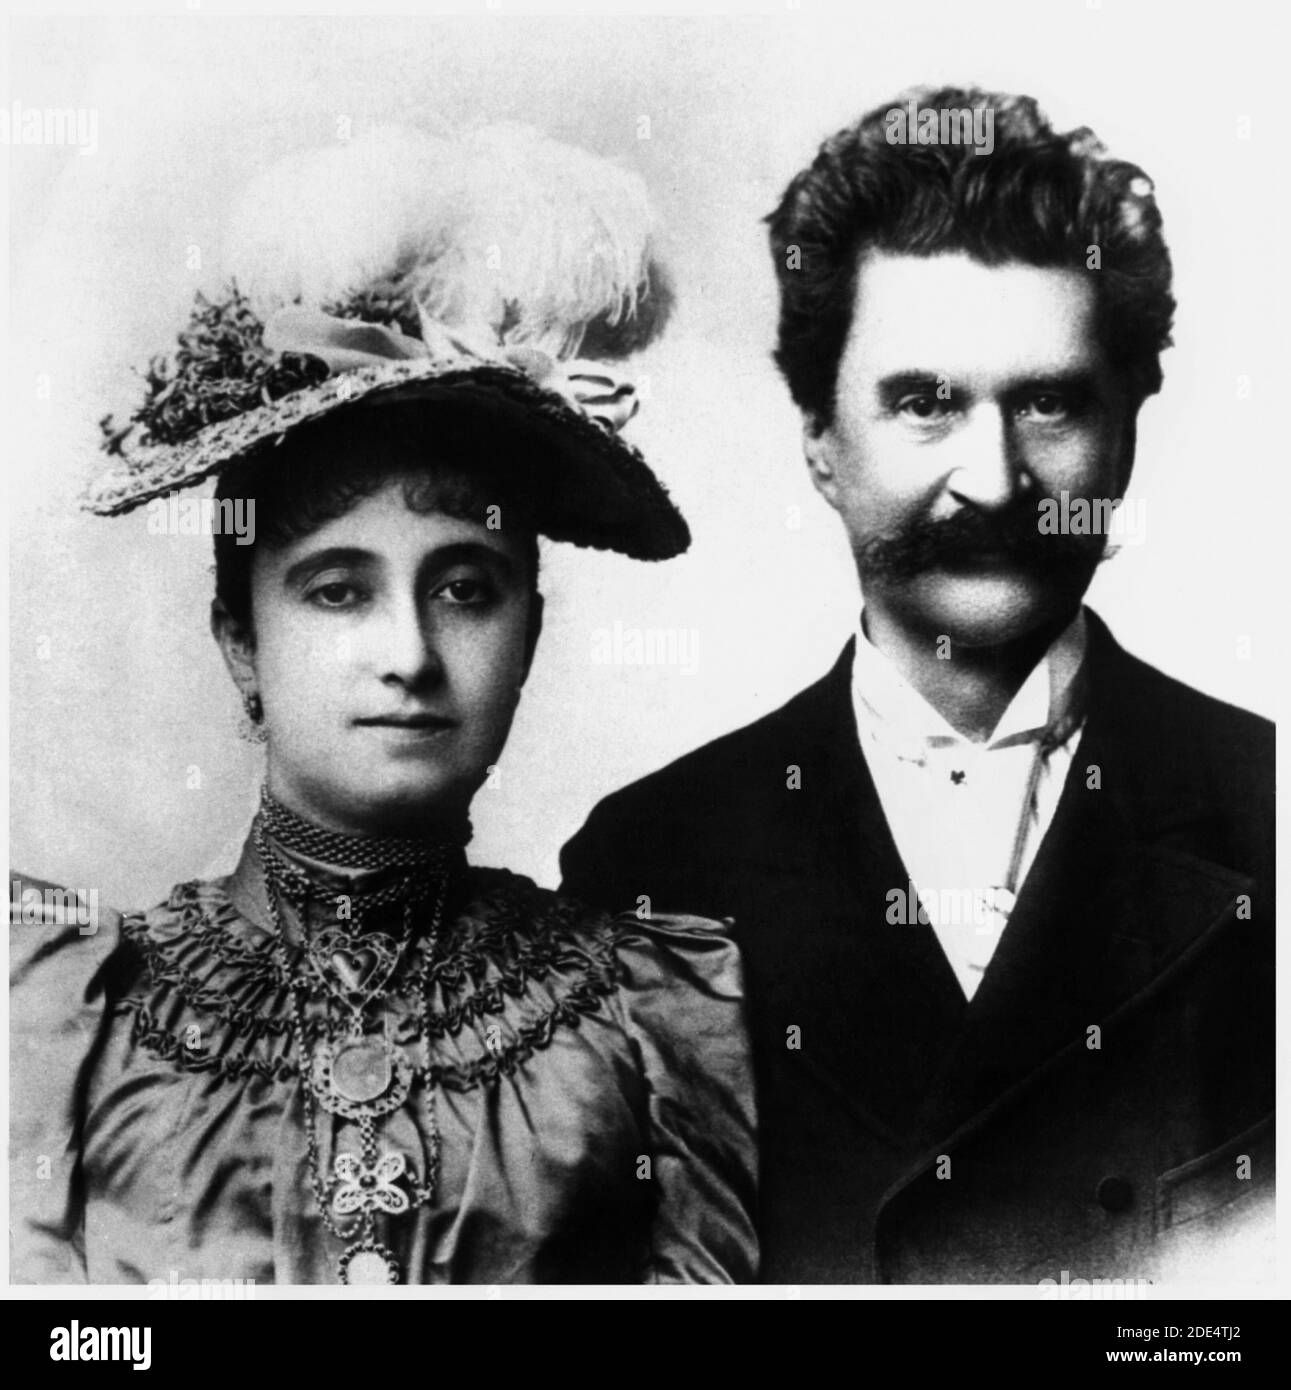 1887 ca., ÖSTERREICH : der österreichische Musikkomponist JOHANN STRAUSS Jr ( 1825 - 1899 ) mit seiner 3. Frau ADELE DEUTSCH ( 1856 - 1930 ) heiratete im august 1887 . Genannt "der Walzerkönig", populärer Komponist von Tanzmusik und Operetten, von denen der berühmteste die FLEDERMAUS ist. UNBEKANNTER FOTOGRAF .- ADELE - COMPOSITORE - OPERETTE - WALTZER - VALZER - WALZER - CLASSICA - KLASSISCH - PORTRAIT - RITRATTO - MUSICISTA - MUSICA - SCHNURRBART - BAFFI - CRAVATTA - KRAWATTE - JUNIOR - - -- ARCHIVIO GBB Stockfoto